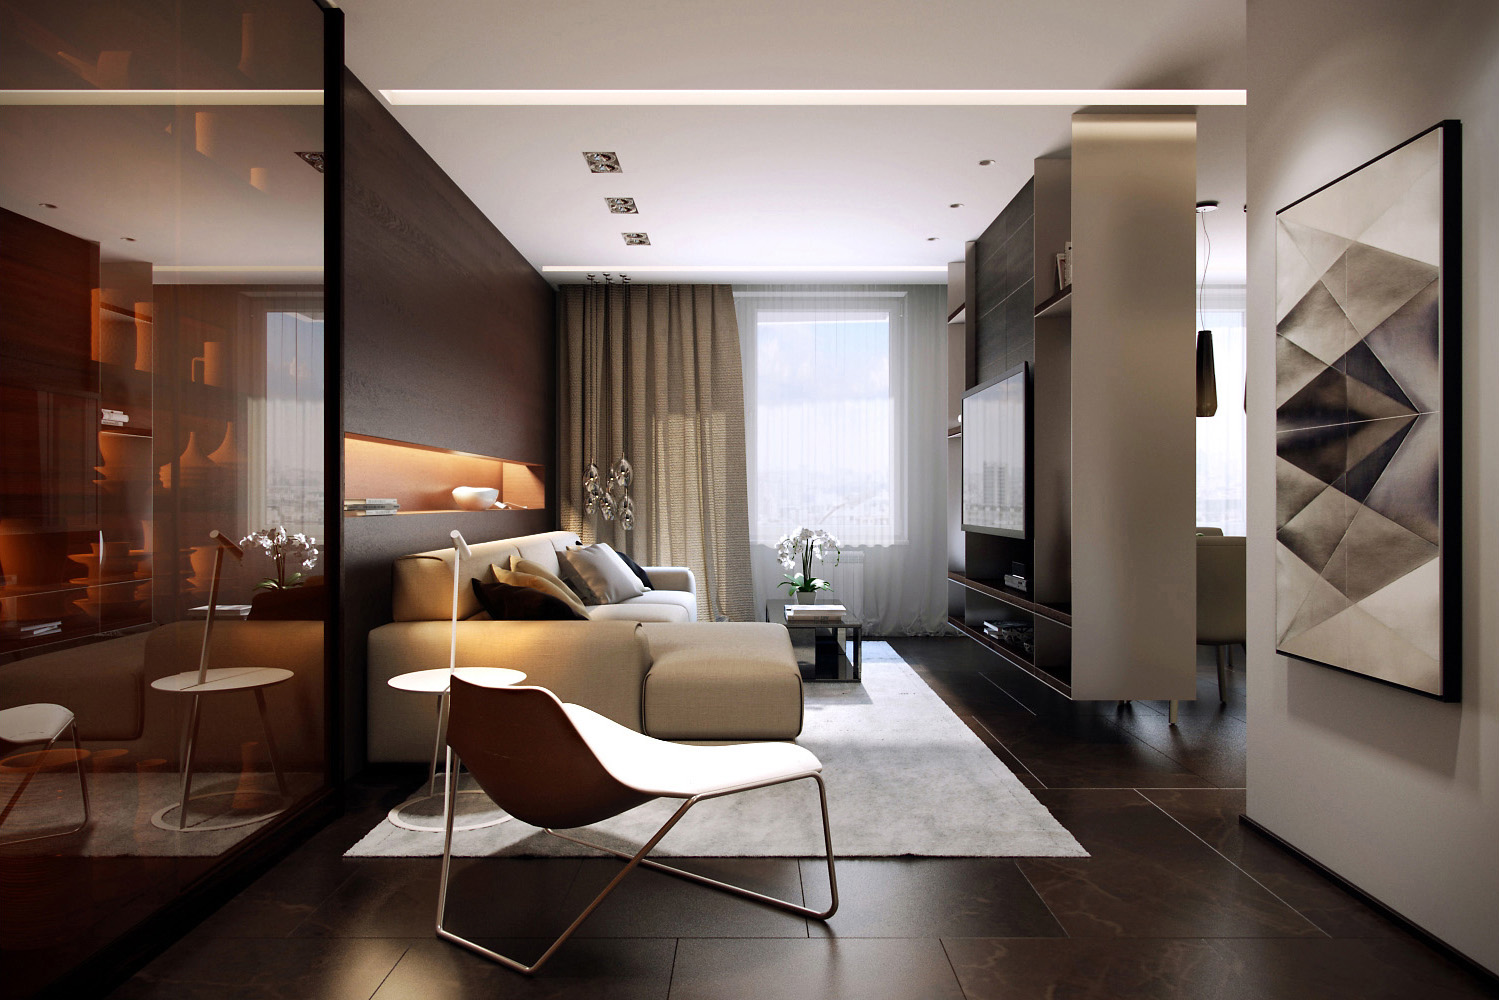 Minimalist living room design